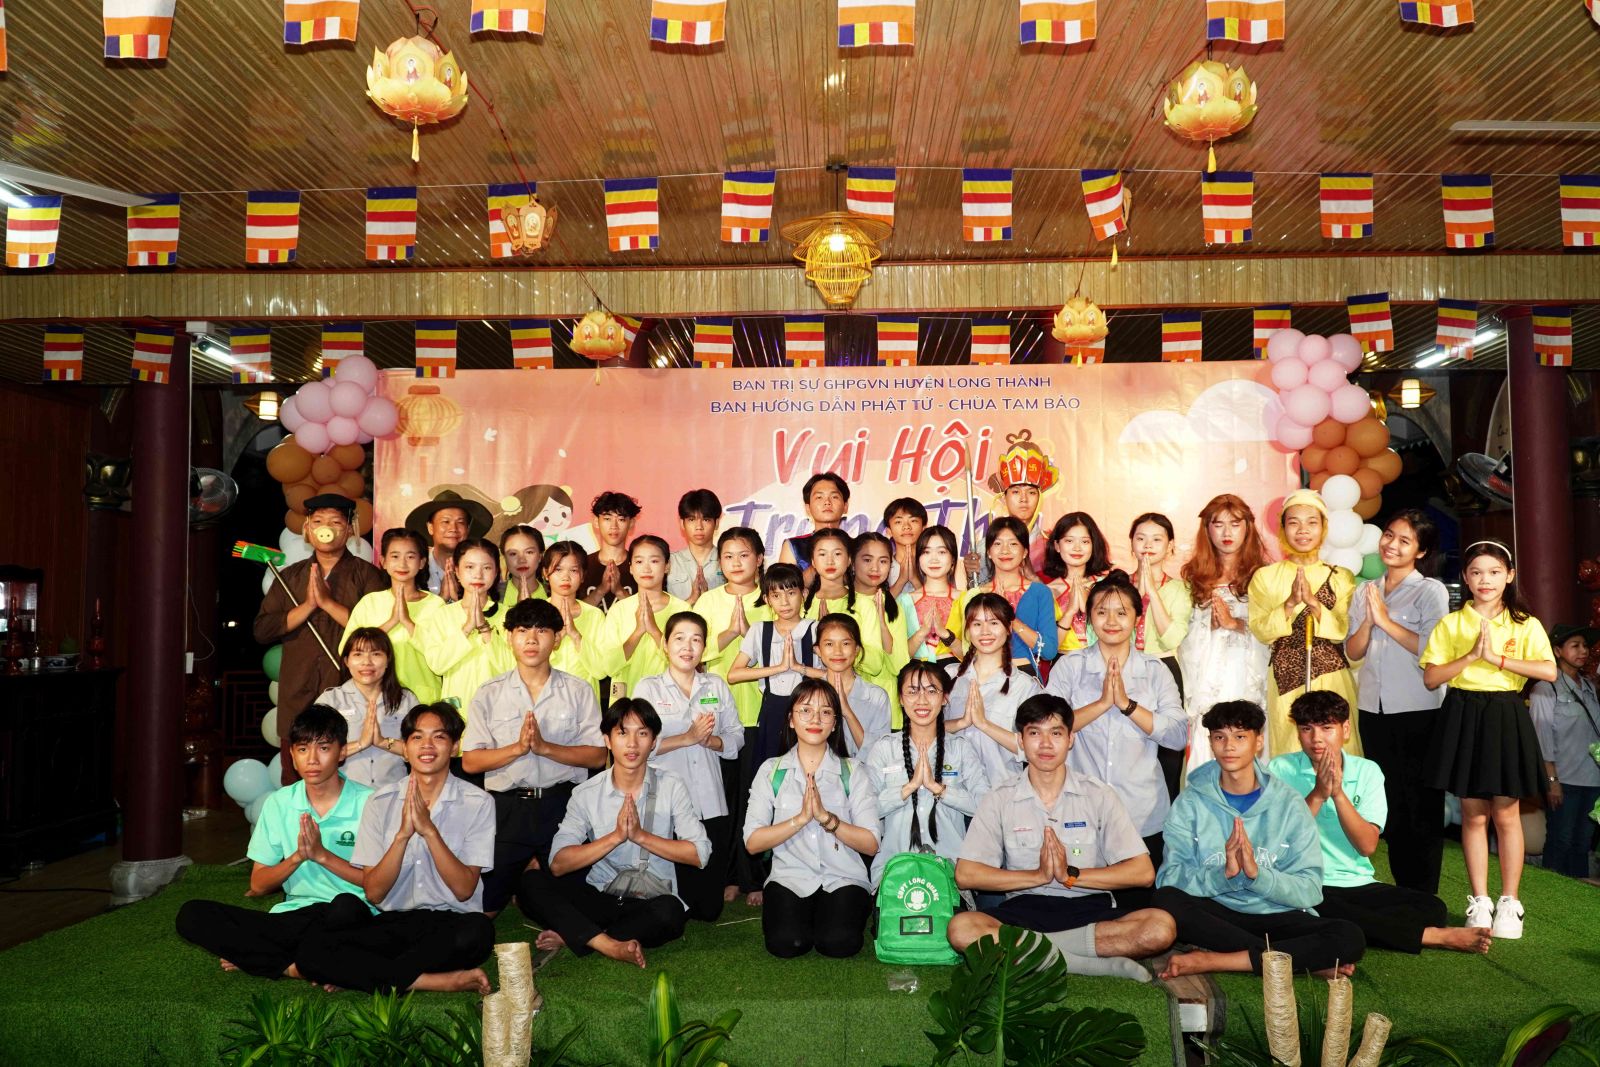 Long Thành: Ban Hướng dẫn Phật tử phối hợp cùng Chùa Tam Bảo tổ chức đêm trung thu cho hơn 500 em Thiếu nhi.